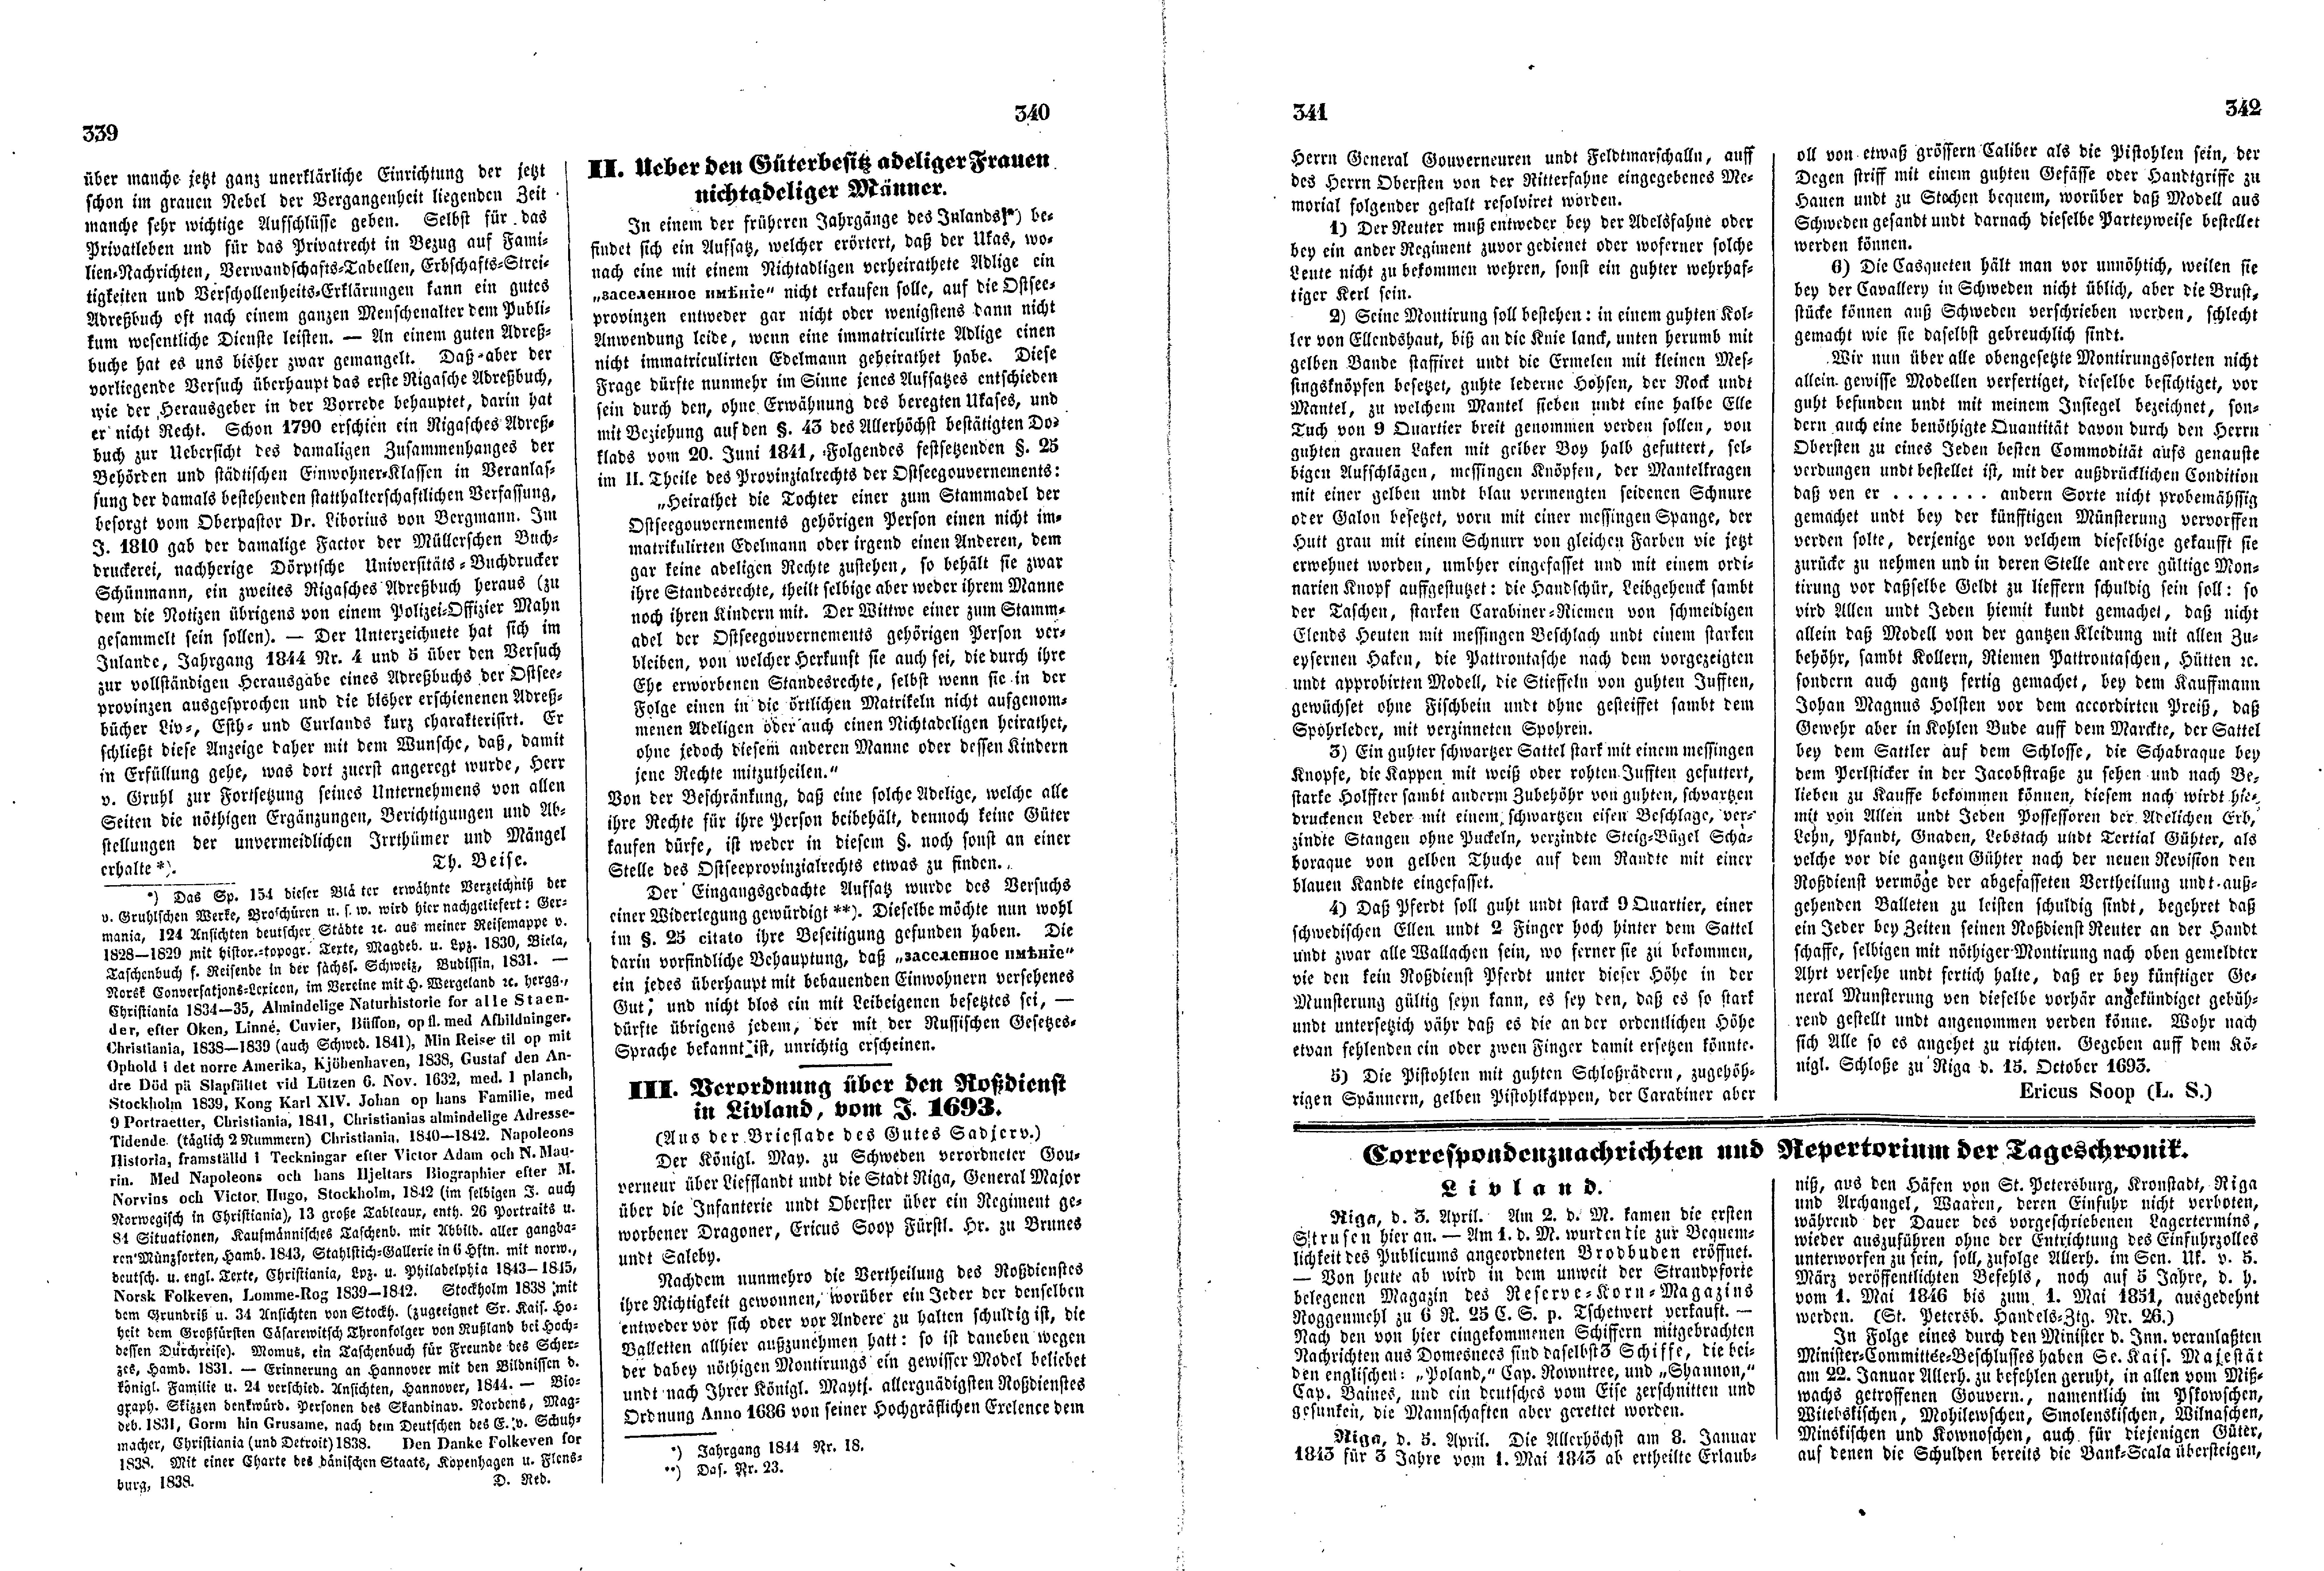 Das Inland [11] (1846) | 90. (339-342) Haupttext